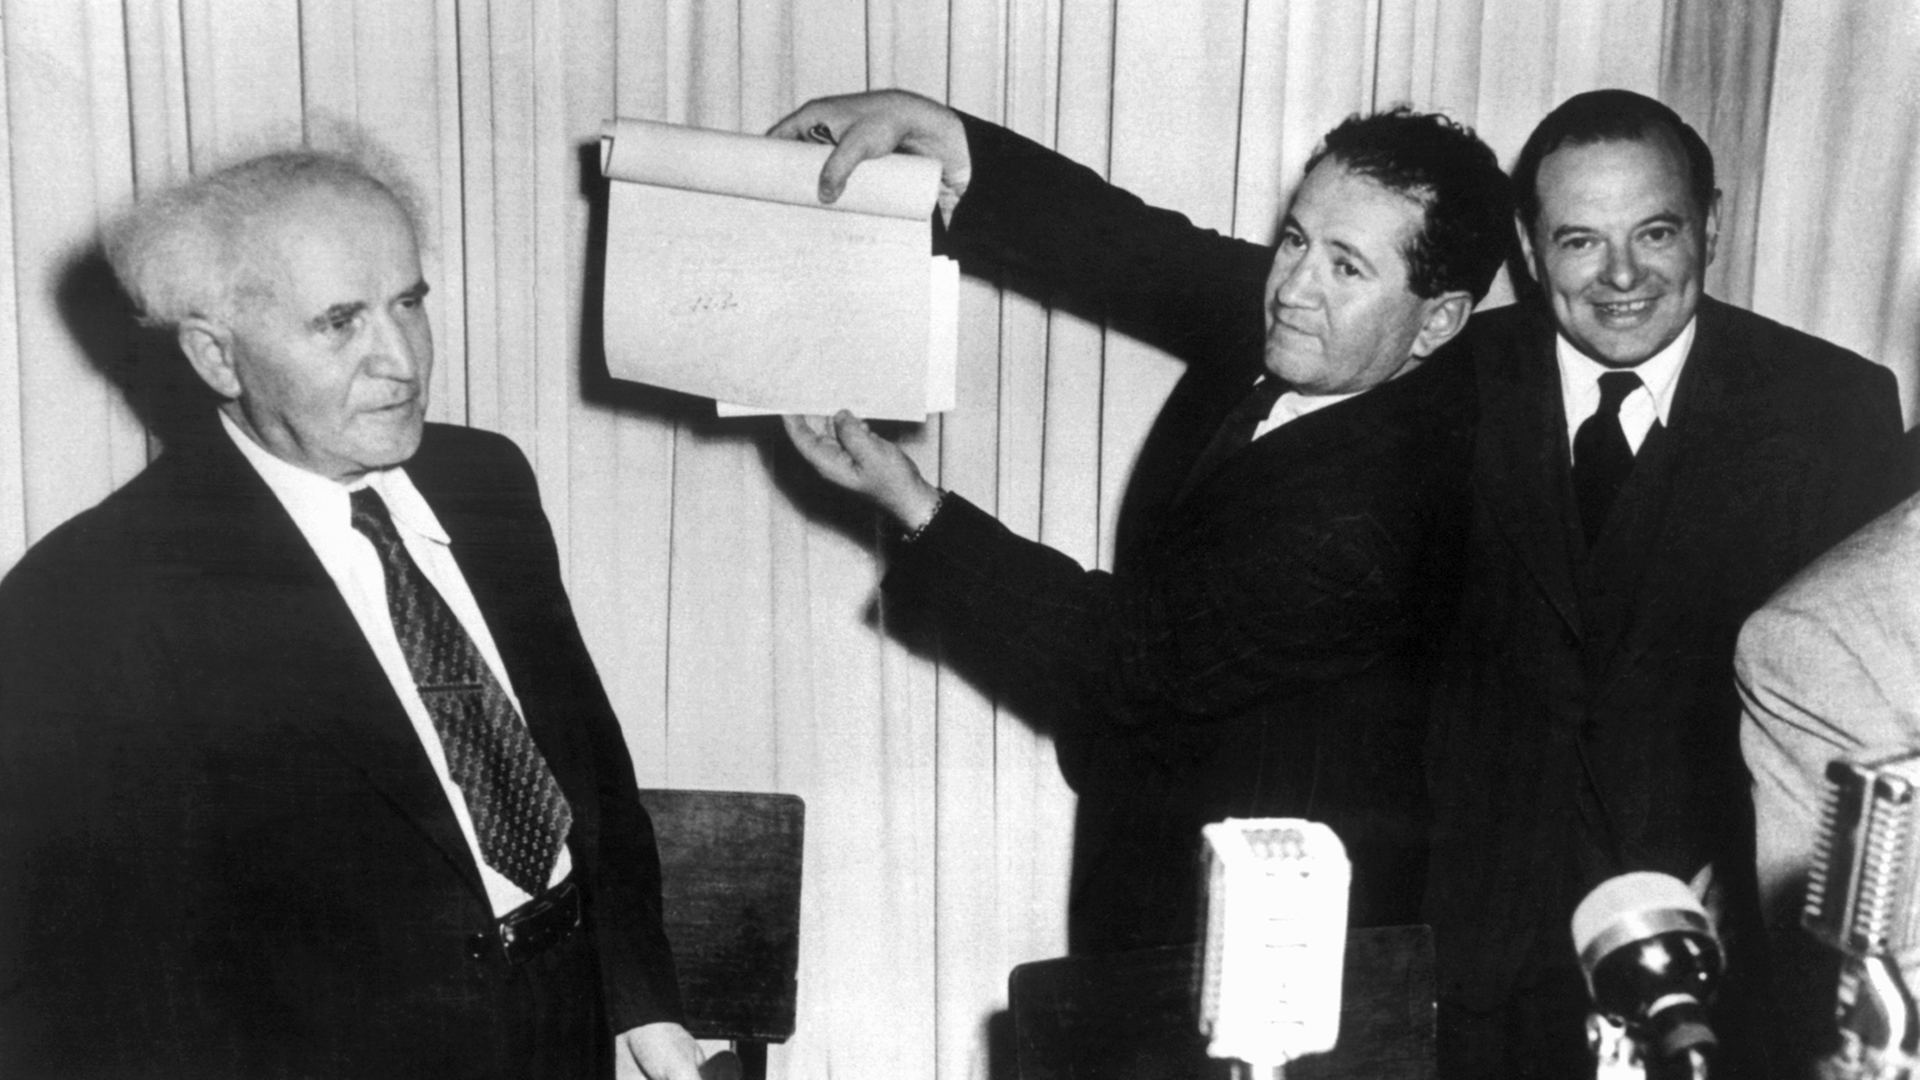 Nach der Unterzeichnung der Proklamationsurkunde am 14. Mai 1948 im hält eine nicht identifizierte Person das Schriftstück in die Höhe. Links: David Ben Gurion, der erste Ministerpräsident Israels.